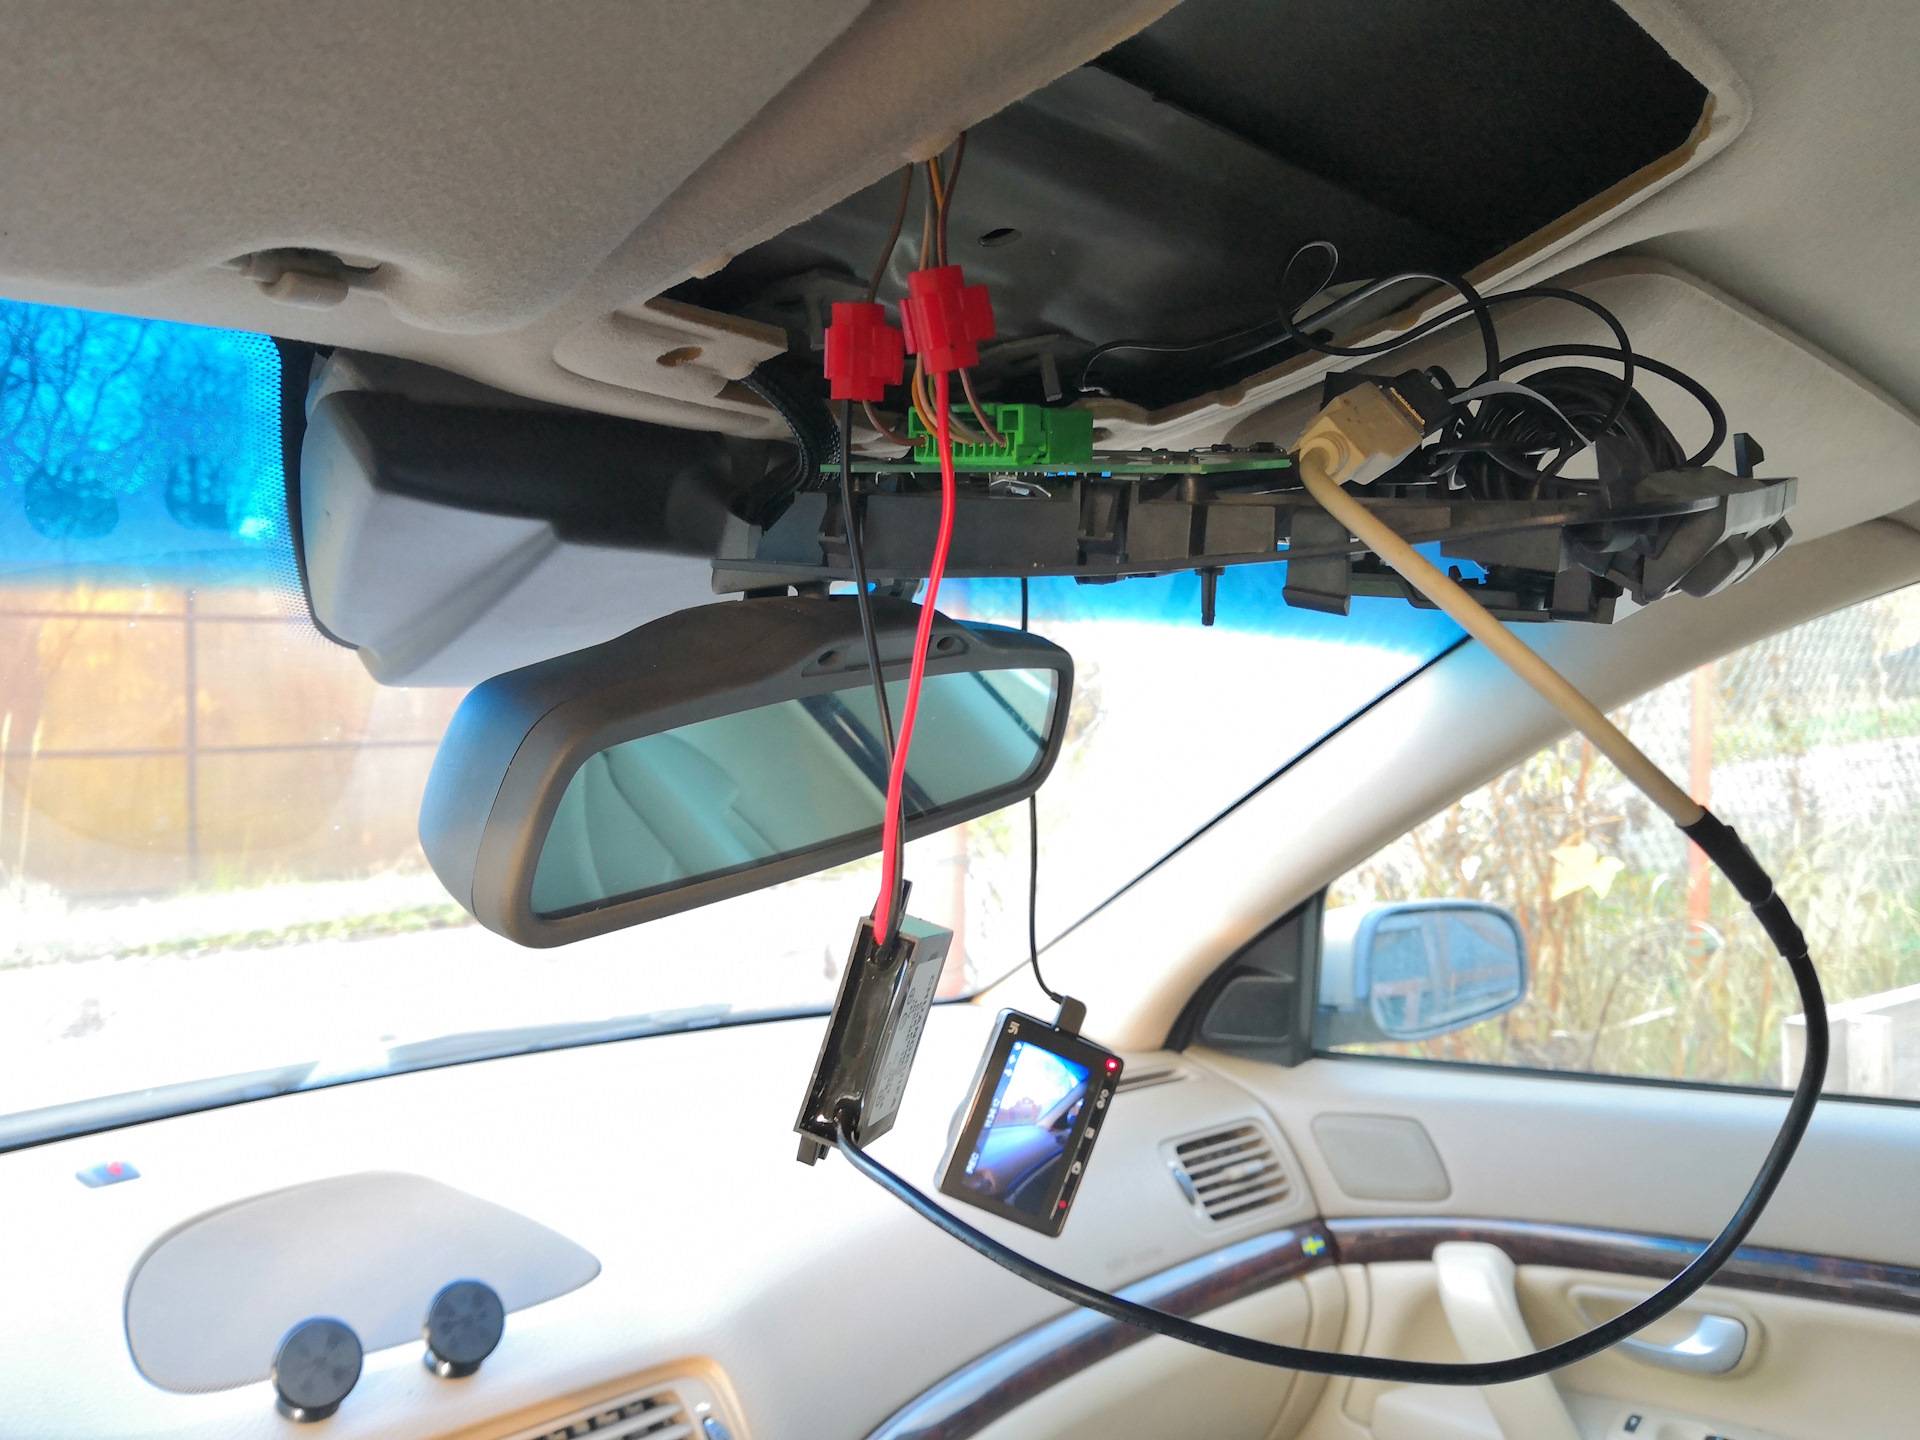 Как подключить видеорегистратор в машине без прикуривателя